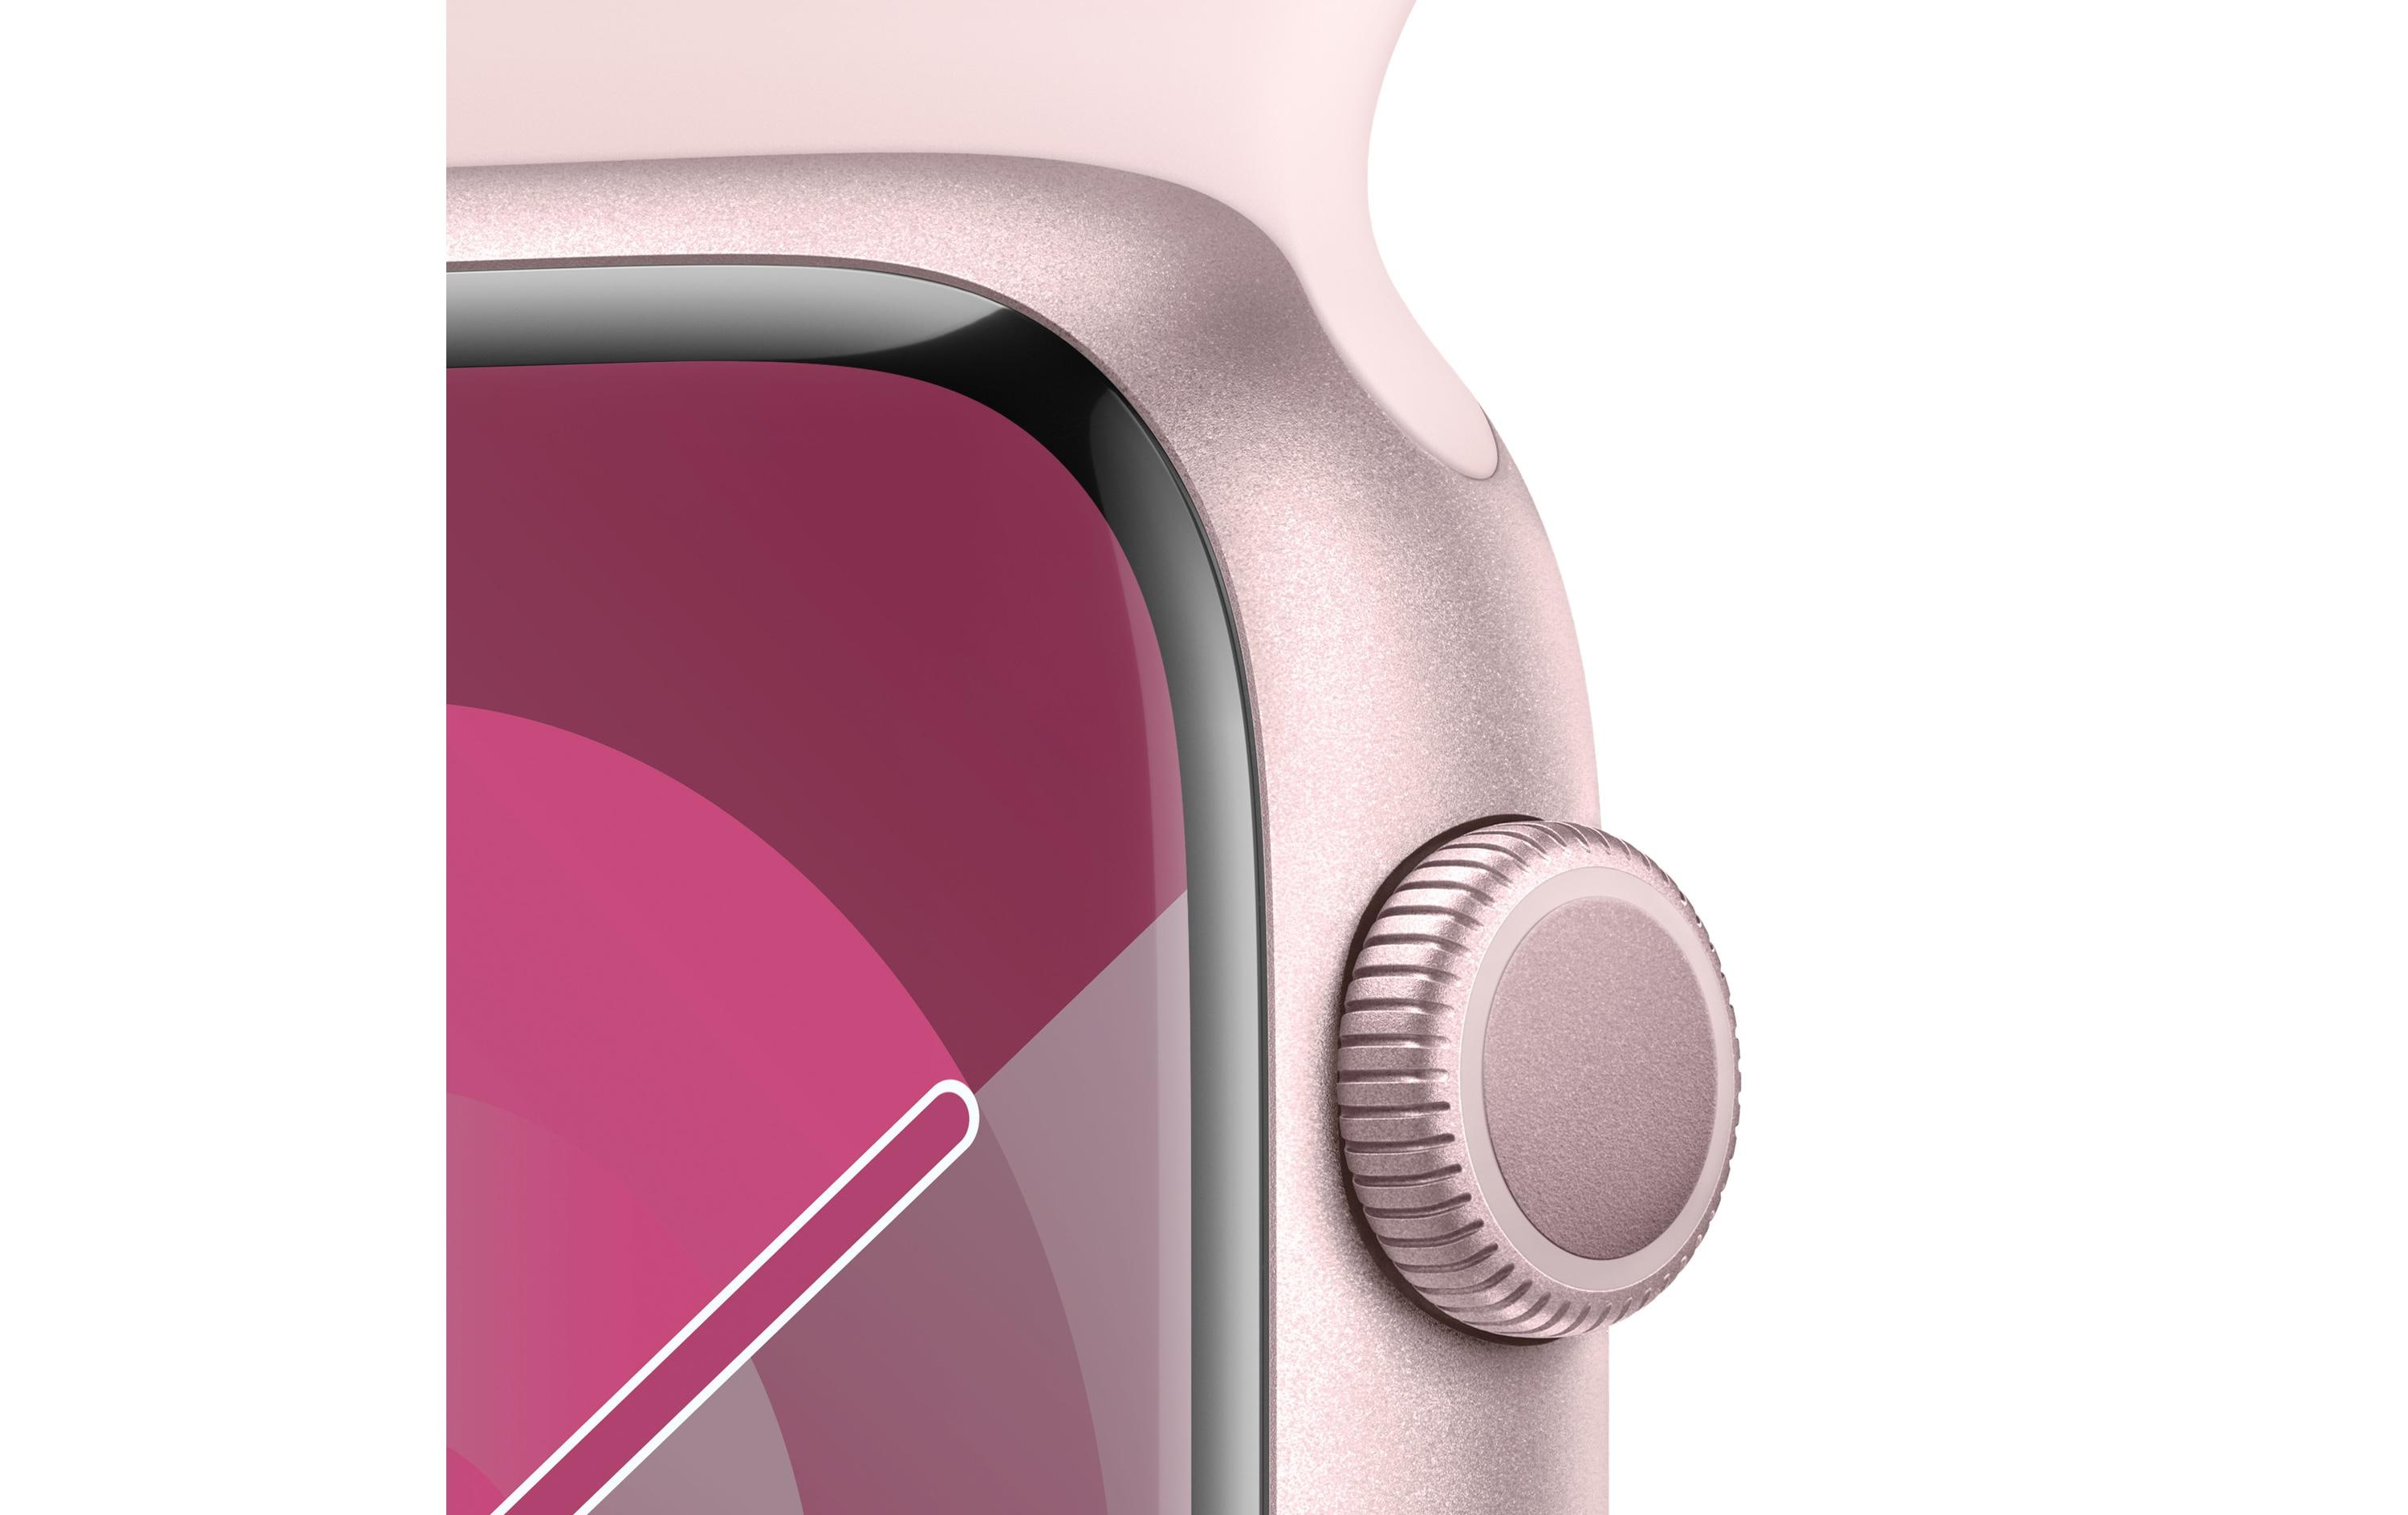 Apple Watch Series 9 45 mm Alu Pink Sport Hellrosa M/L